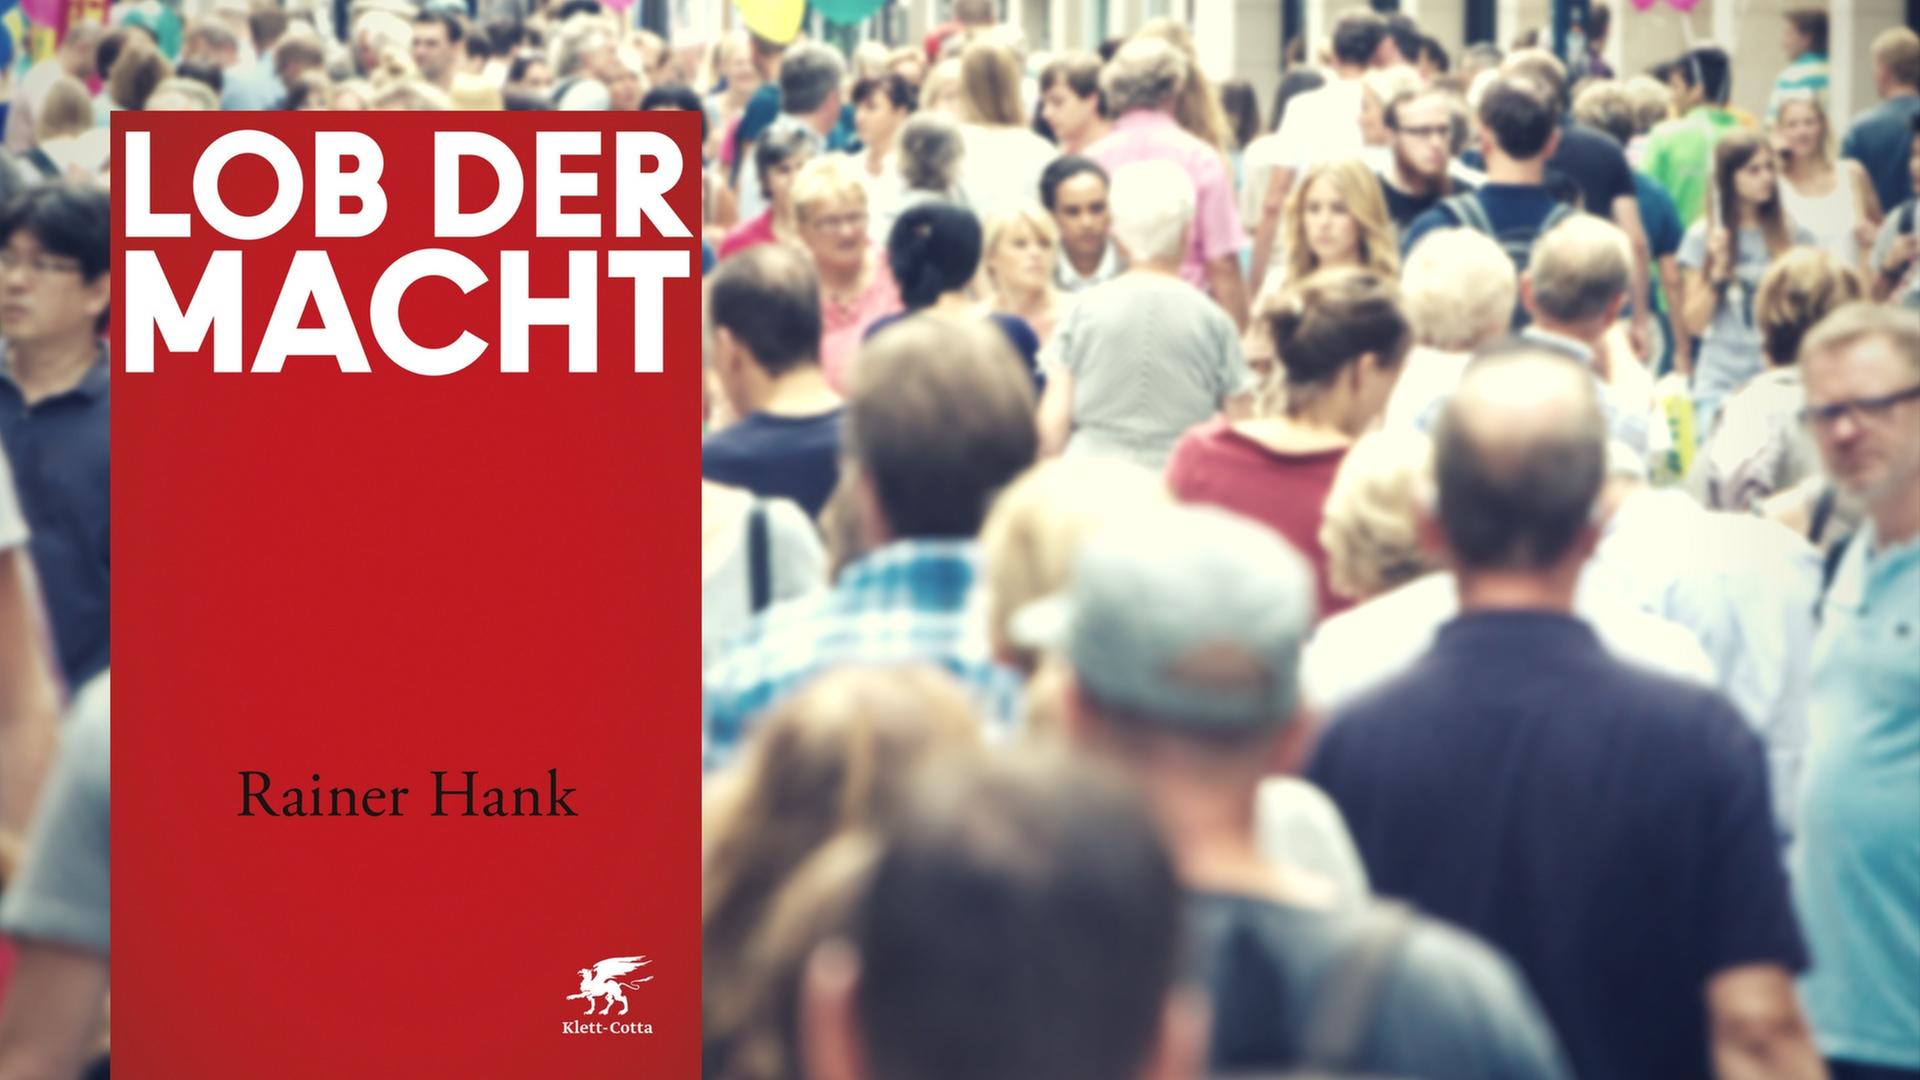 Buchcover "Lob der Macht" von Rainer Hank, im Hintergrund Menschen in einer Fußgängerzone